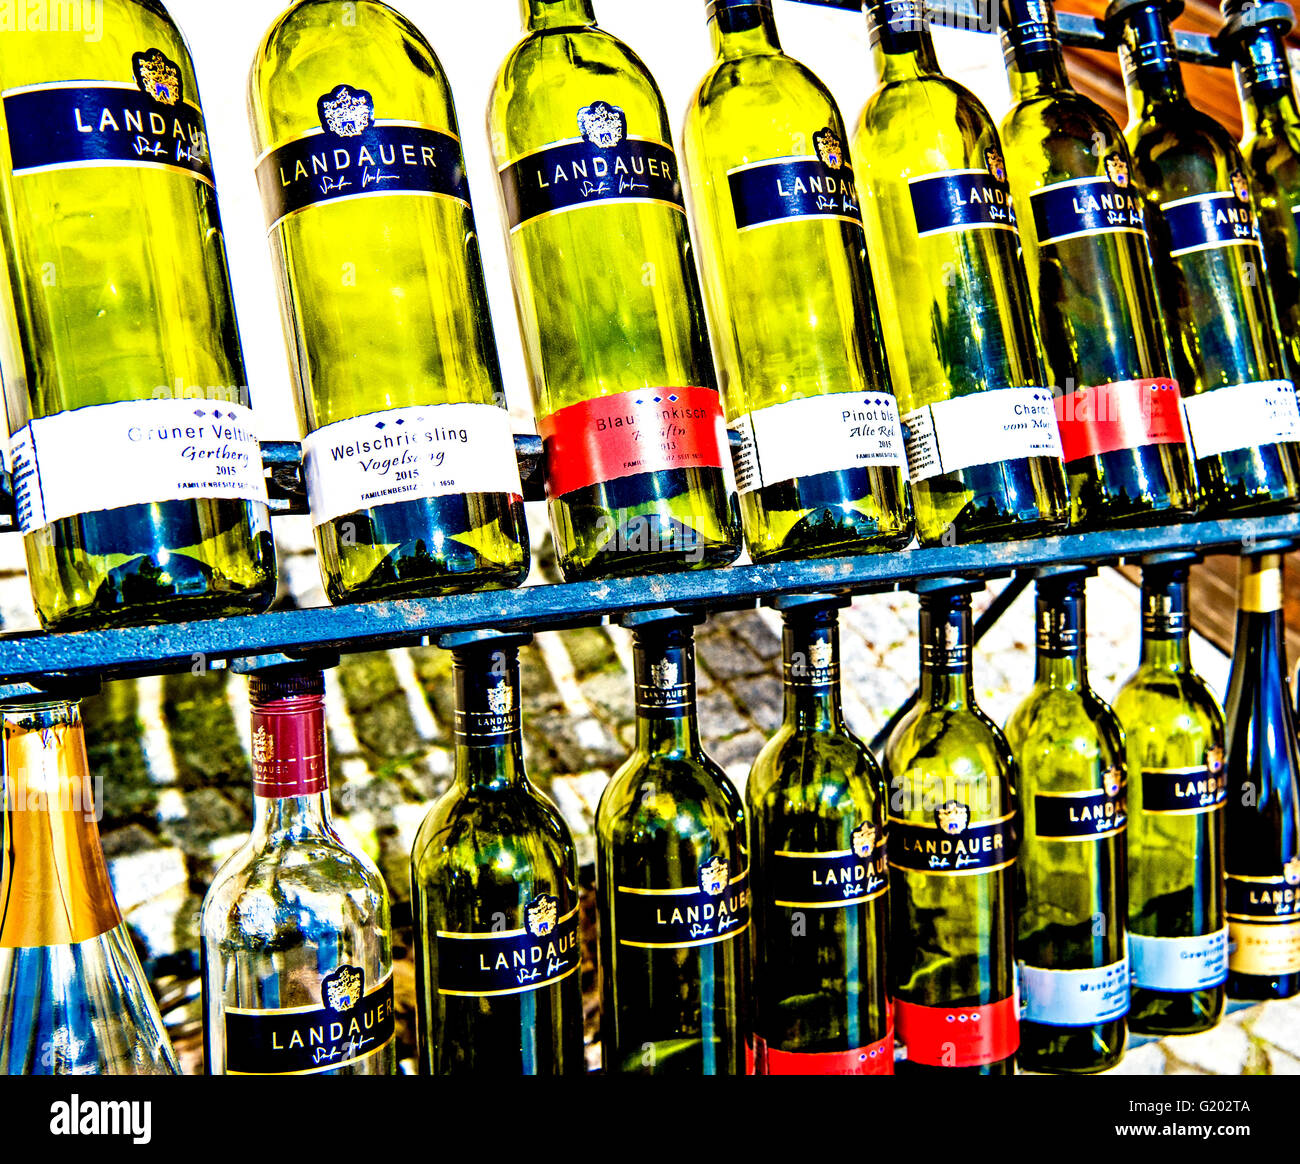 Bottles of wine on display; angebot von weinflaschen Stock Photo